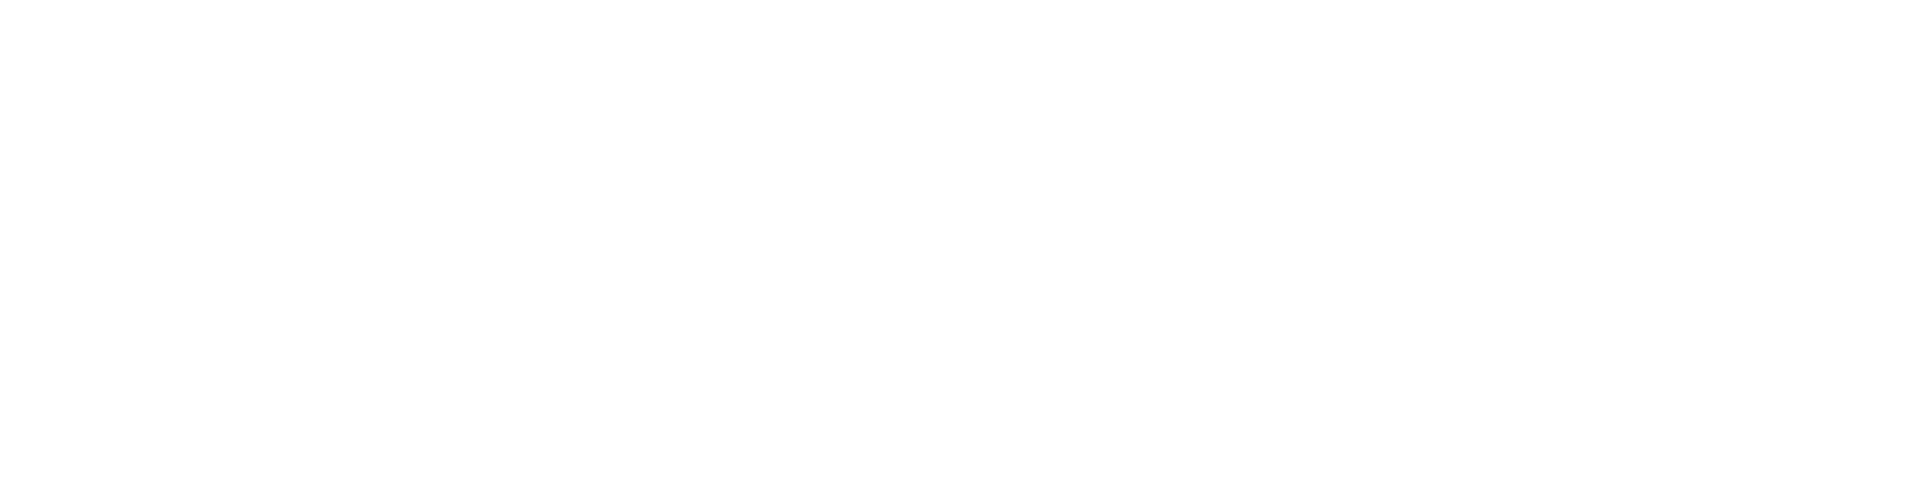 Sean Snyder INK